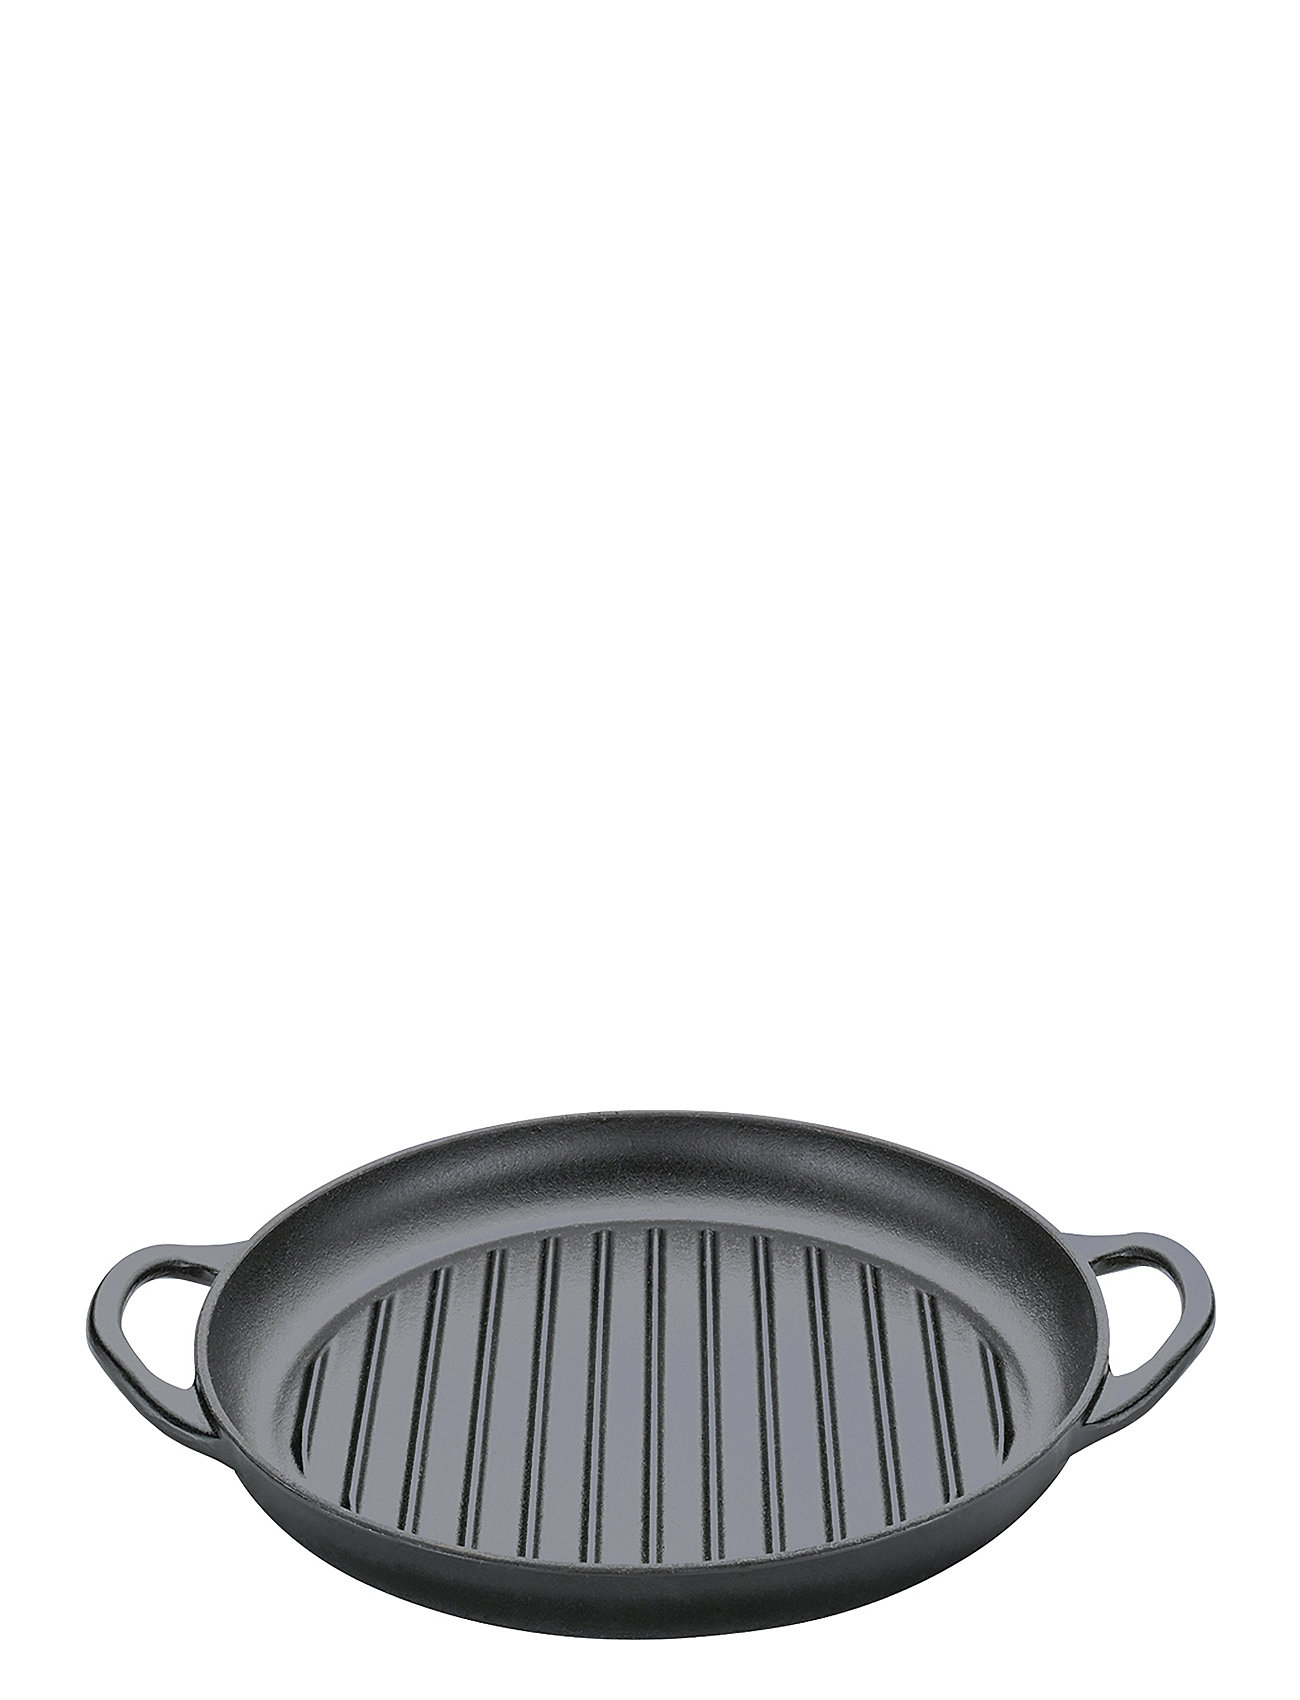 jeg fandt det forretning Modtager maskine küchenprofi Grill Pan With 2 Handles, 30 Cm Black - Pots & pans - Boozt.com